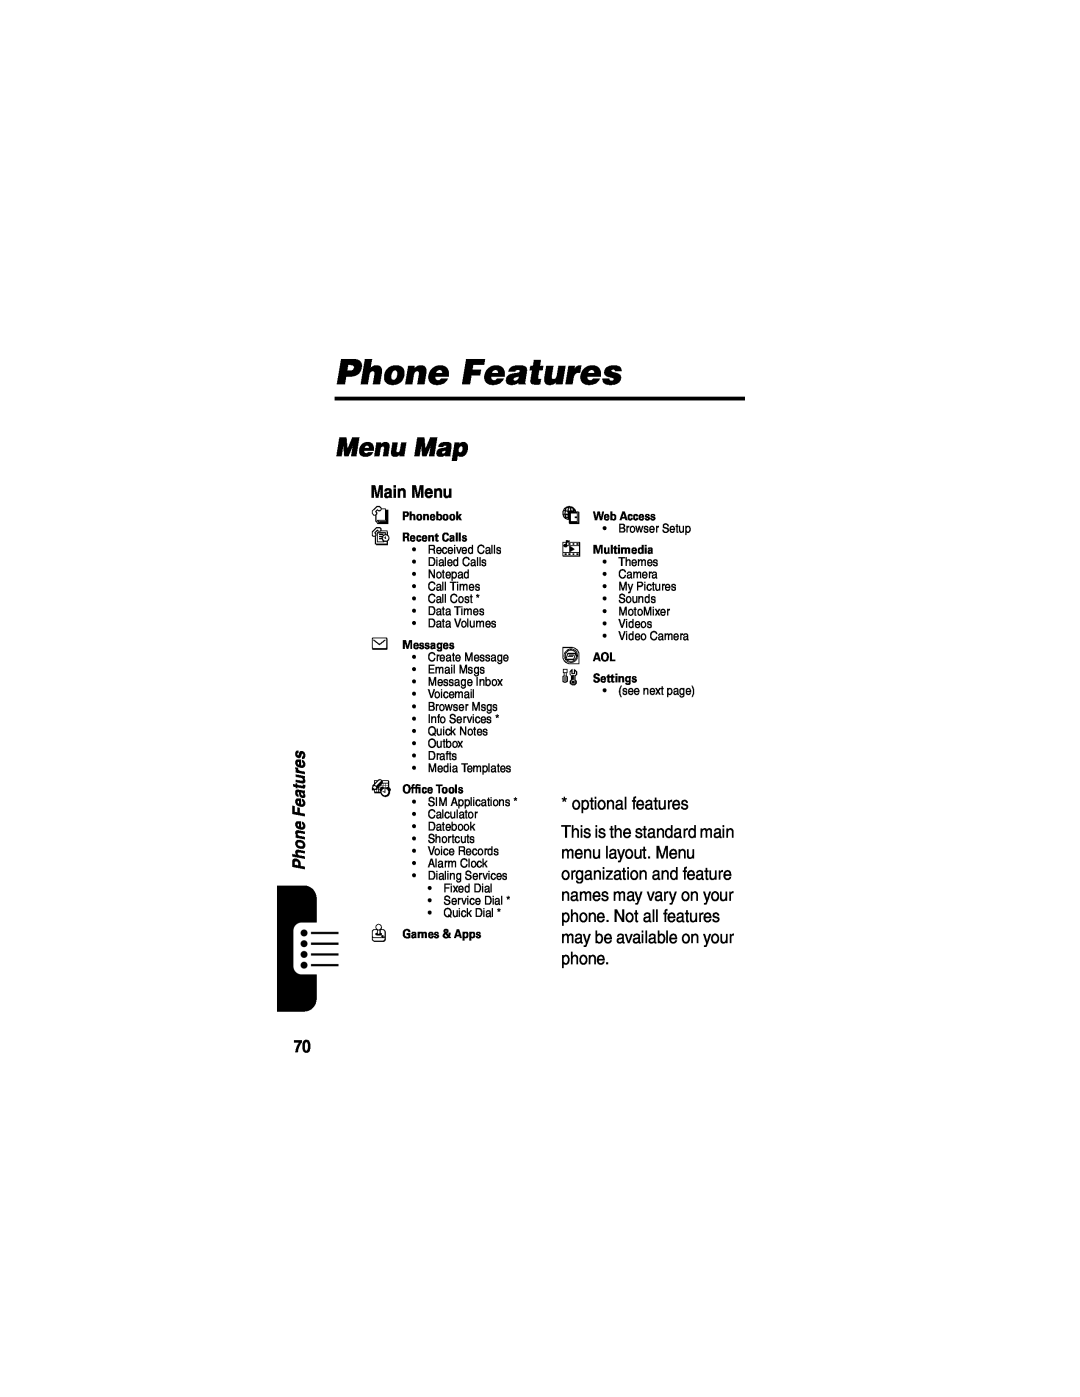 Motorola V635 Phone Features, Menu Map, Main Menu, n Phonebook s Recent Calls, e Messages, É Office Tools, Q Games & Apps 